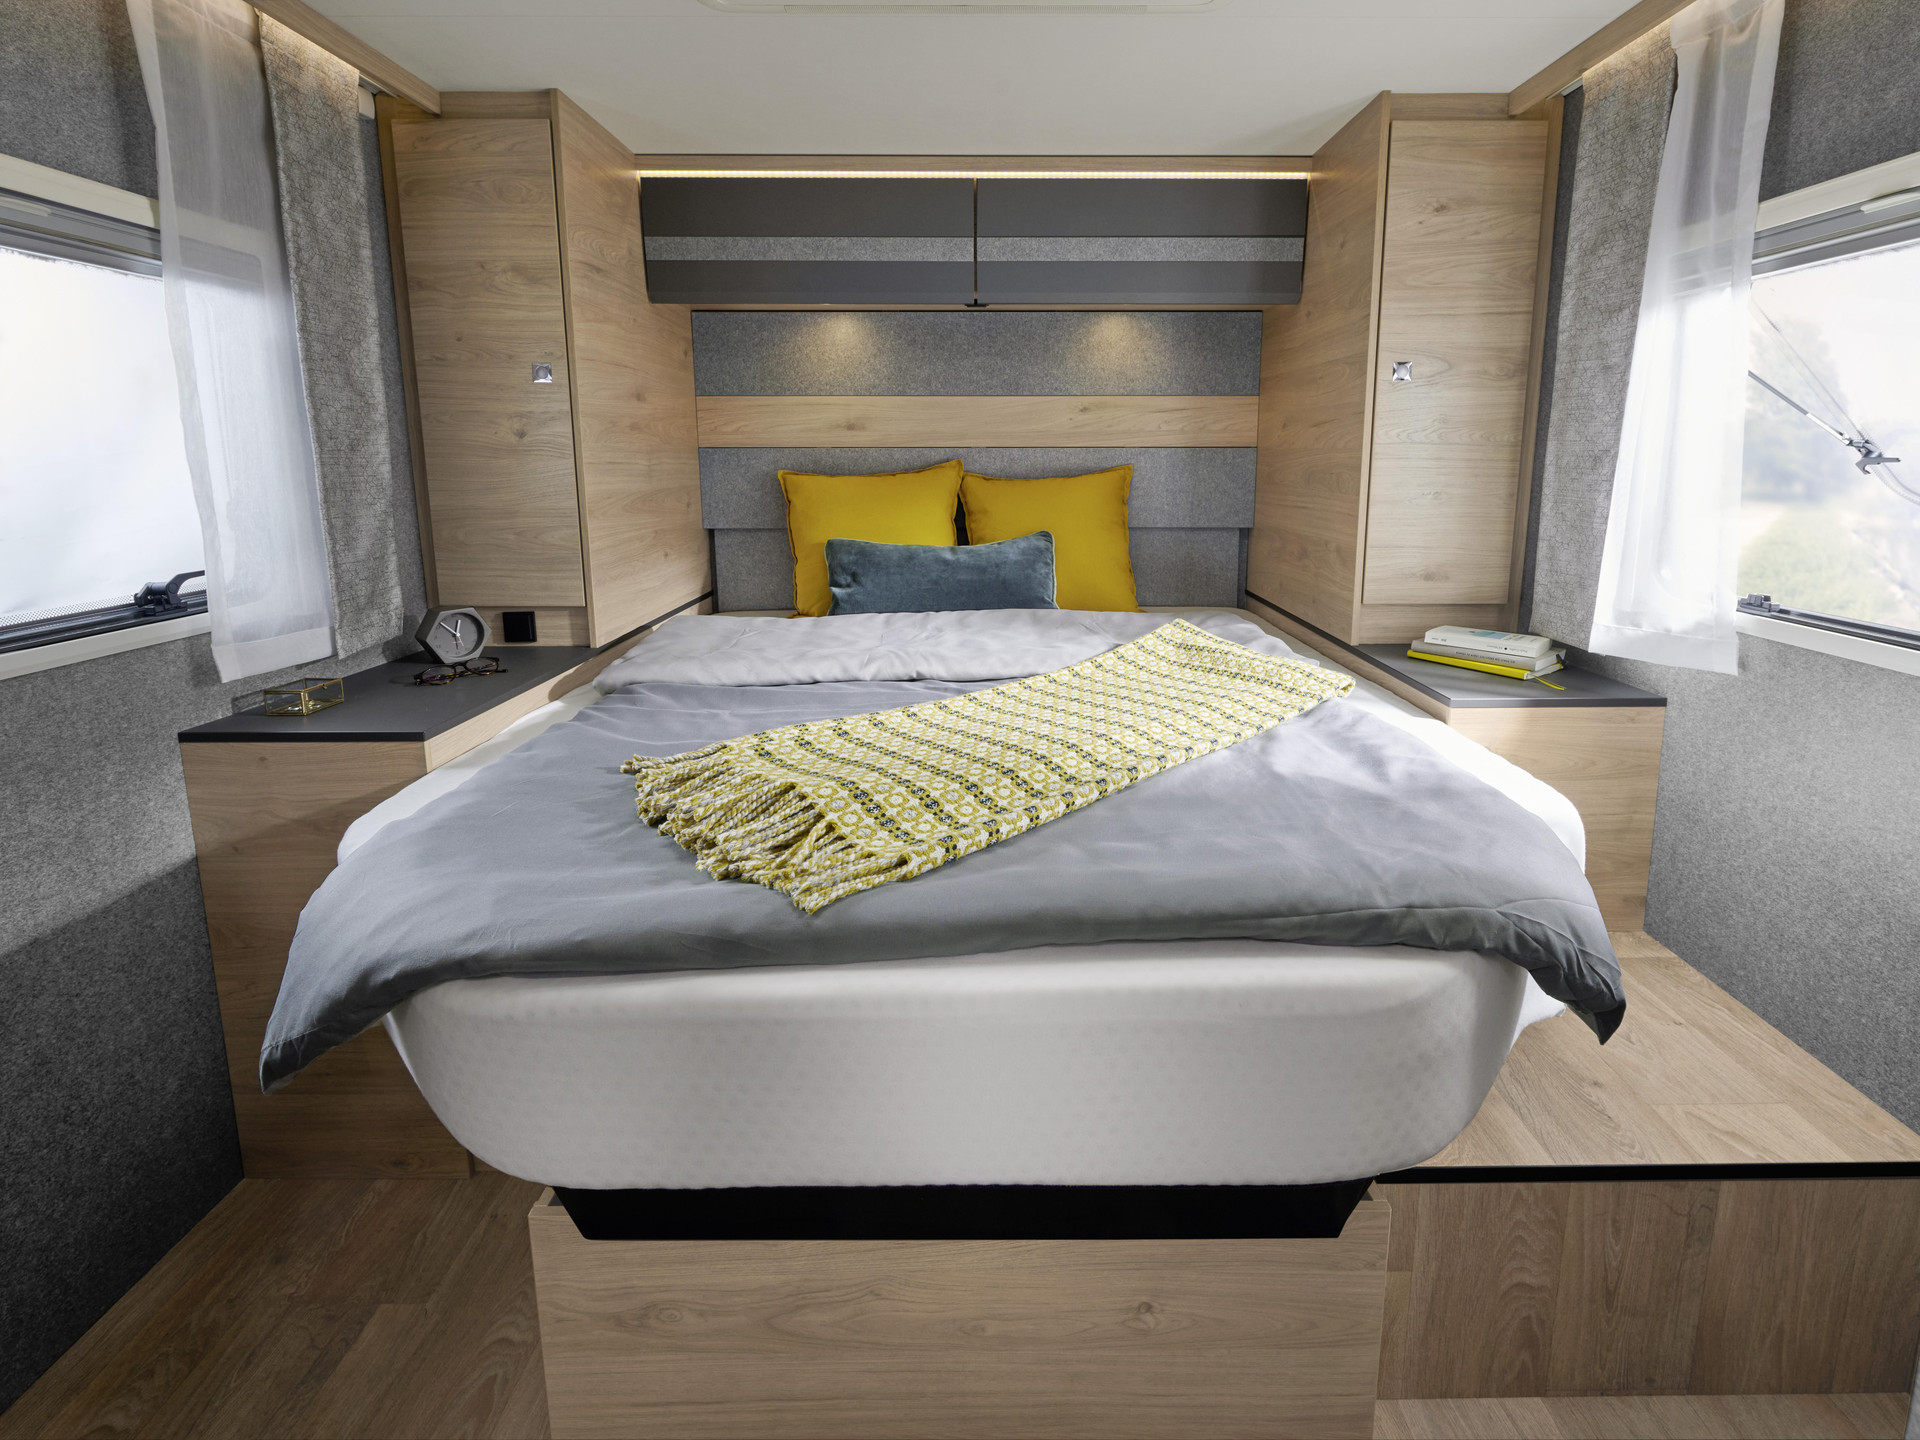 Łóżko 190 x 150 cm jest seryjnie wyposażone w regulację wysokości. Większa przestrzeń ładunkowa w garażu w tylnej części czy więcej miejsca nad głową w sypialni? Ty decydujesz w zależności od potrzeb.